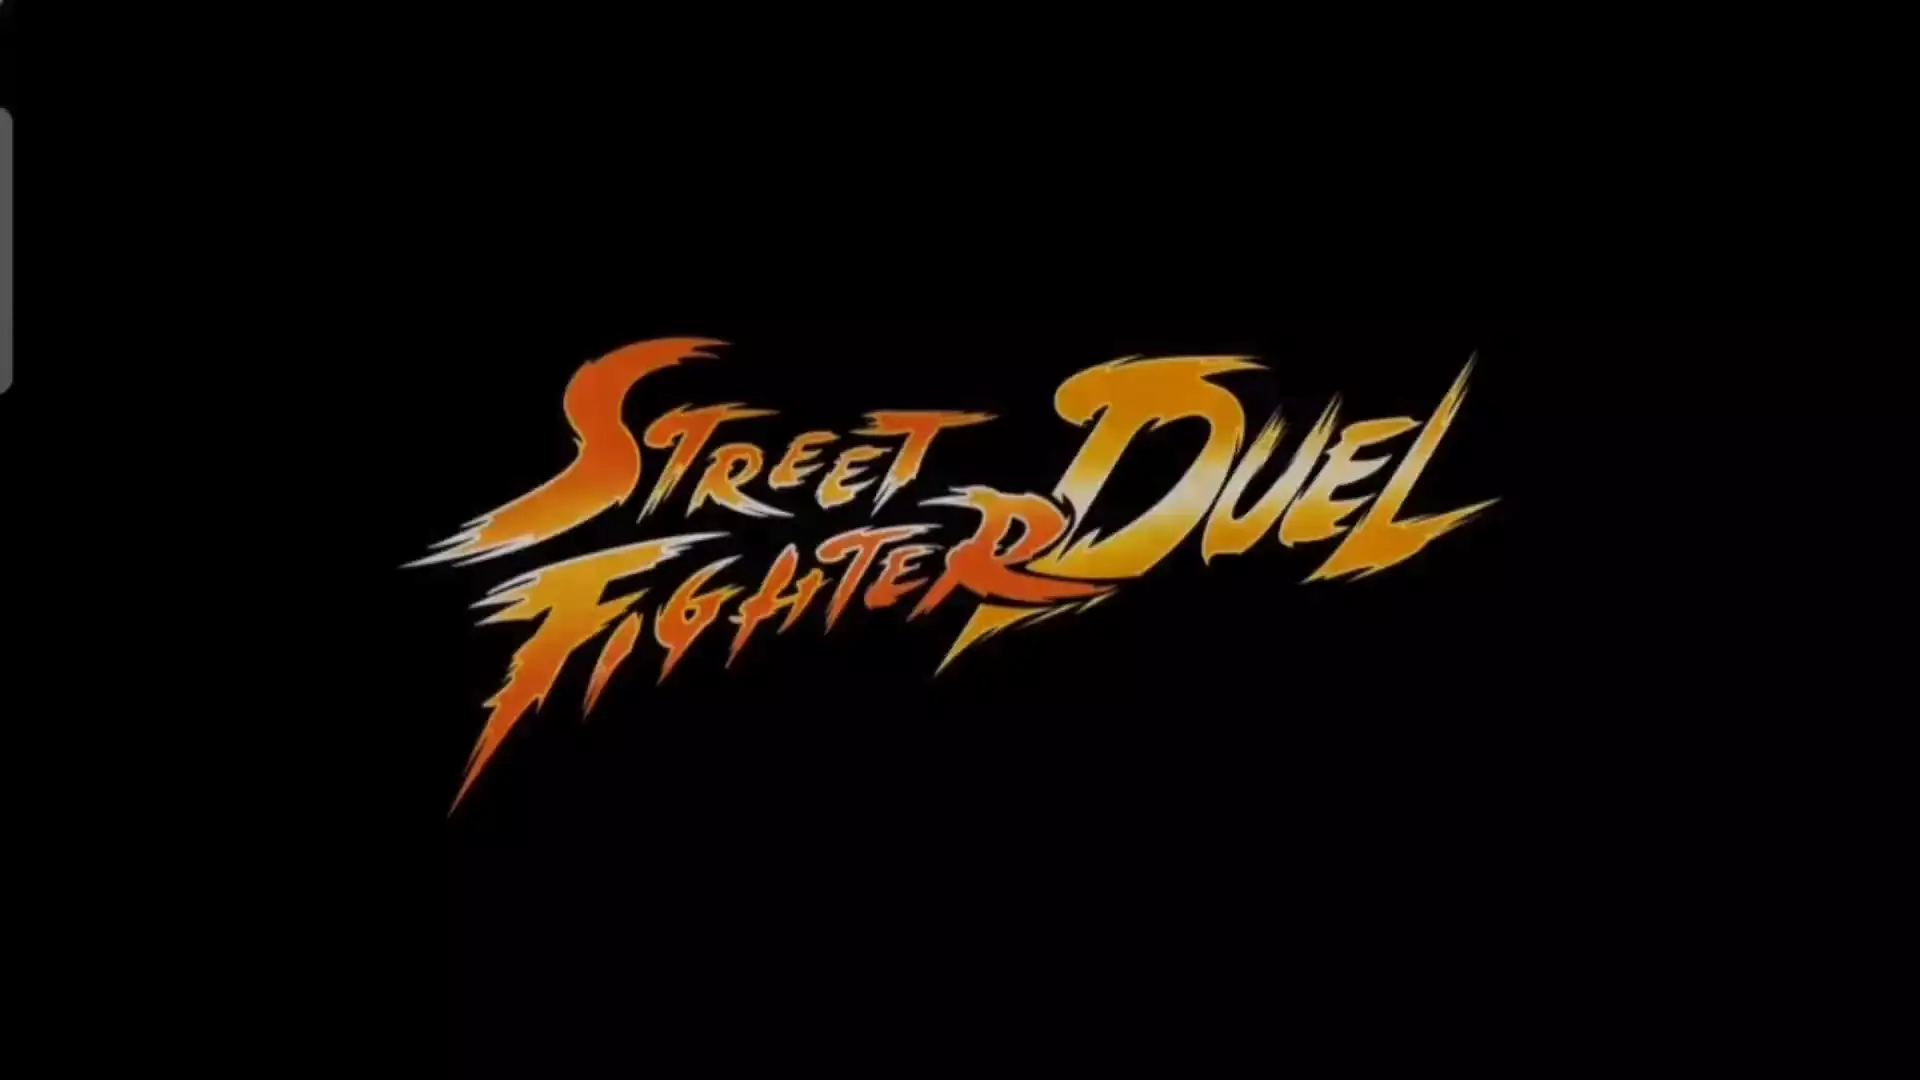 Картинка Street fighter duel